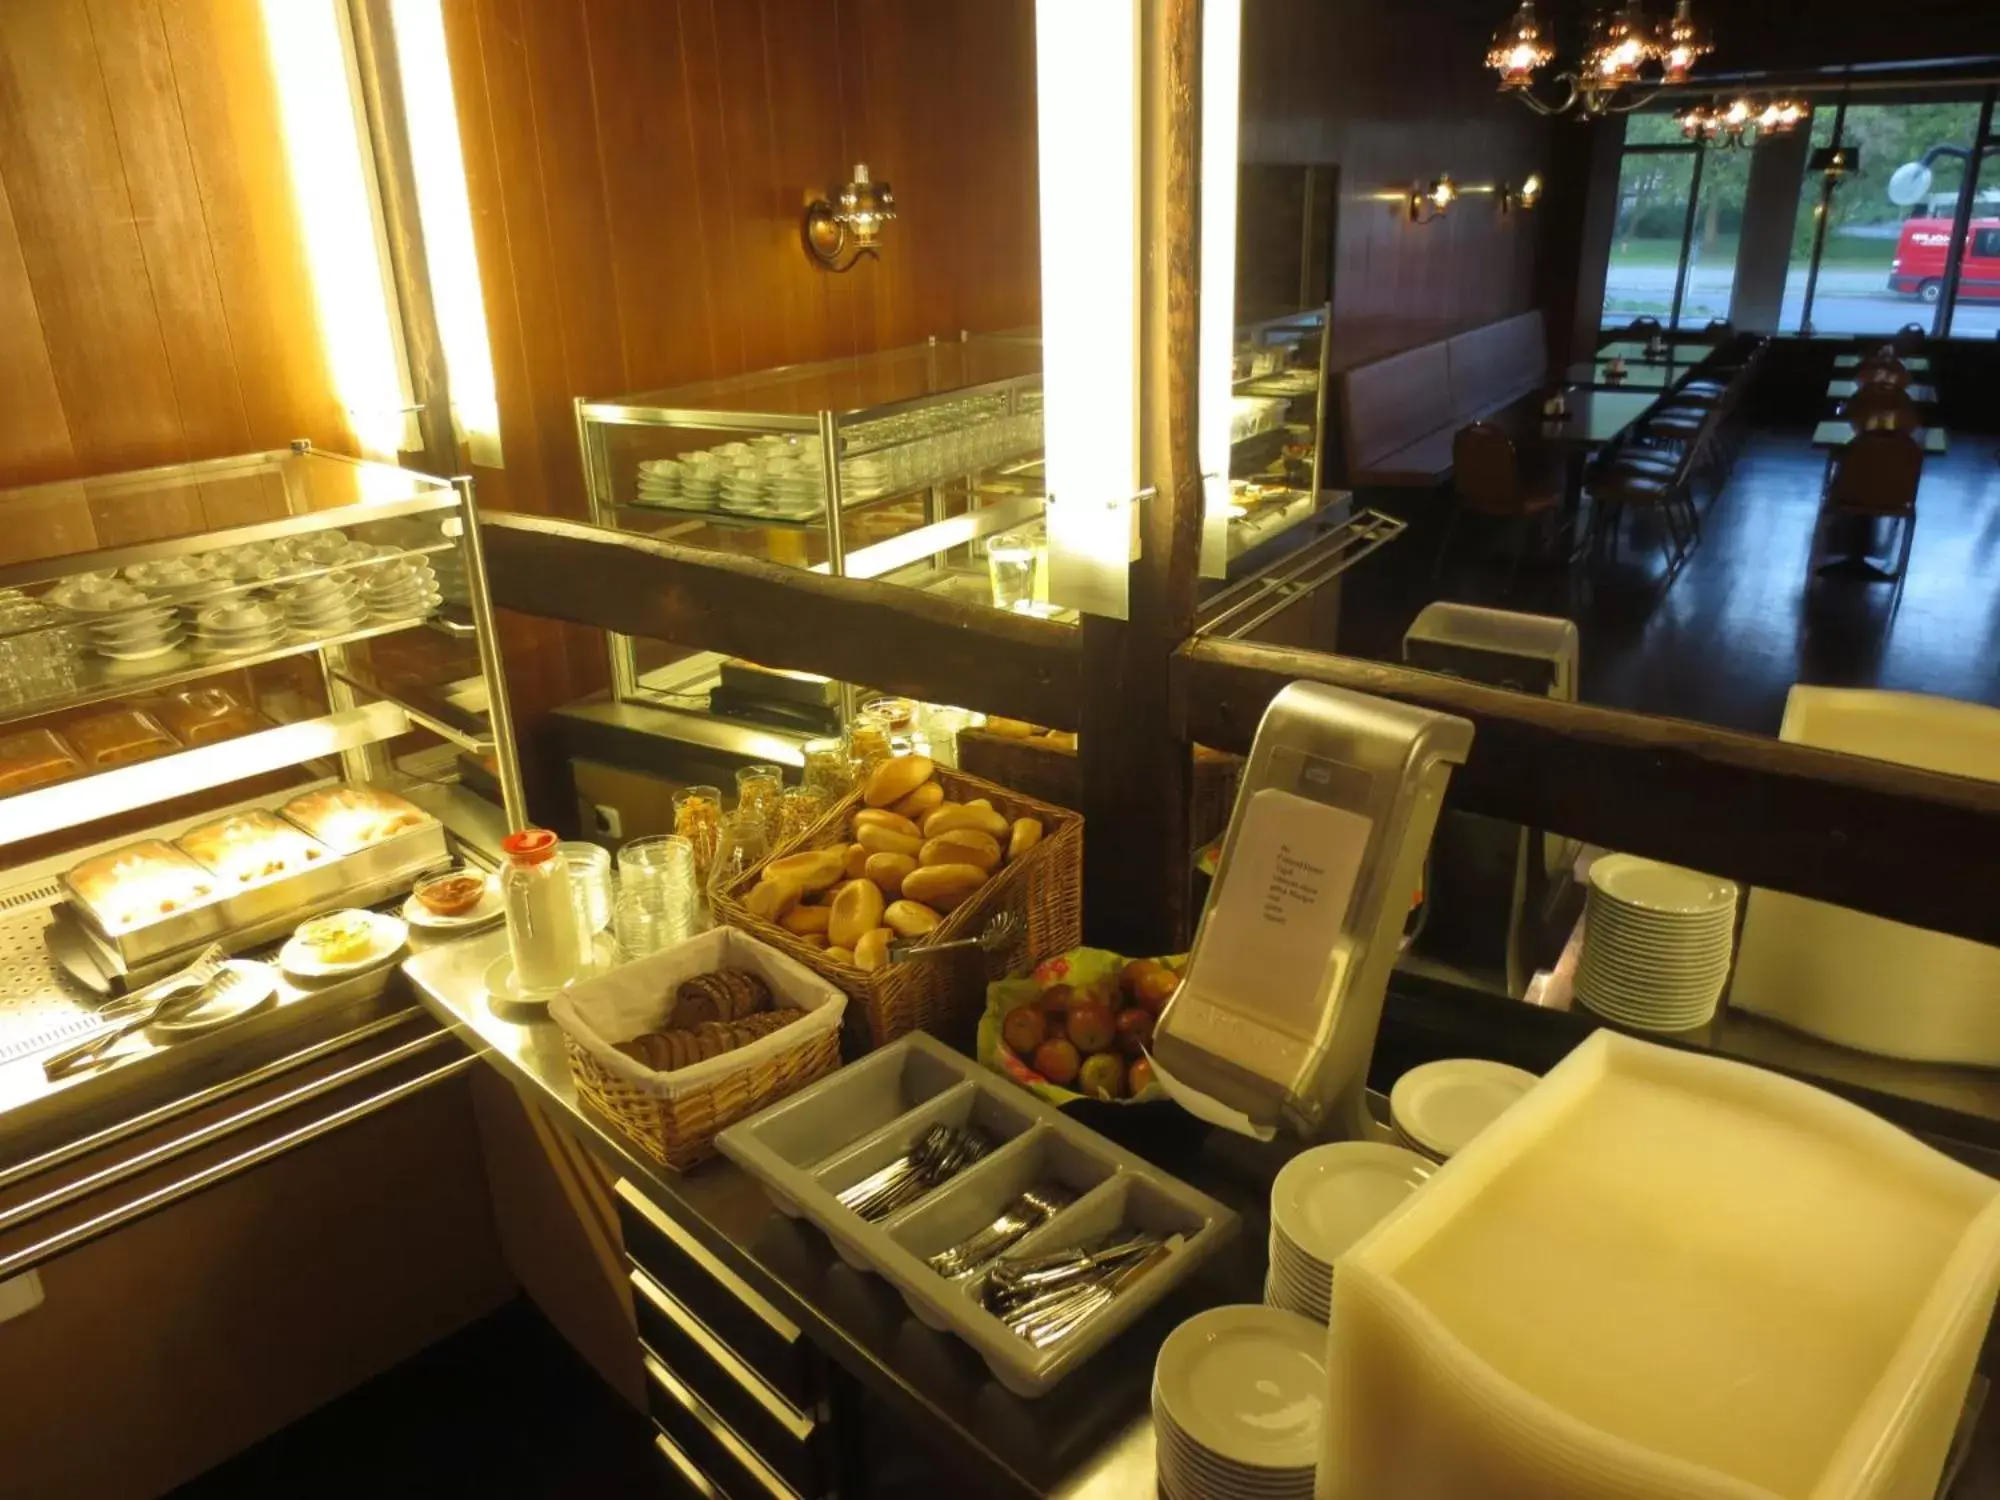 Buffet breakfast in Central-Hotel Tegel